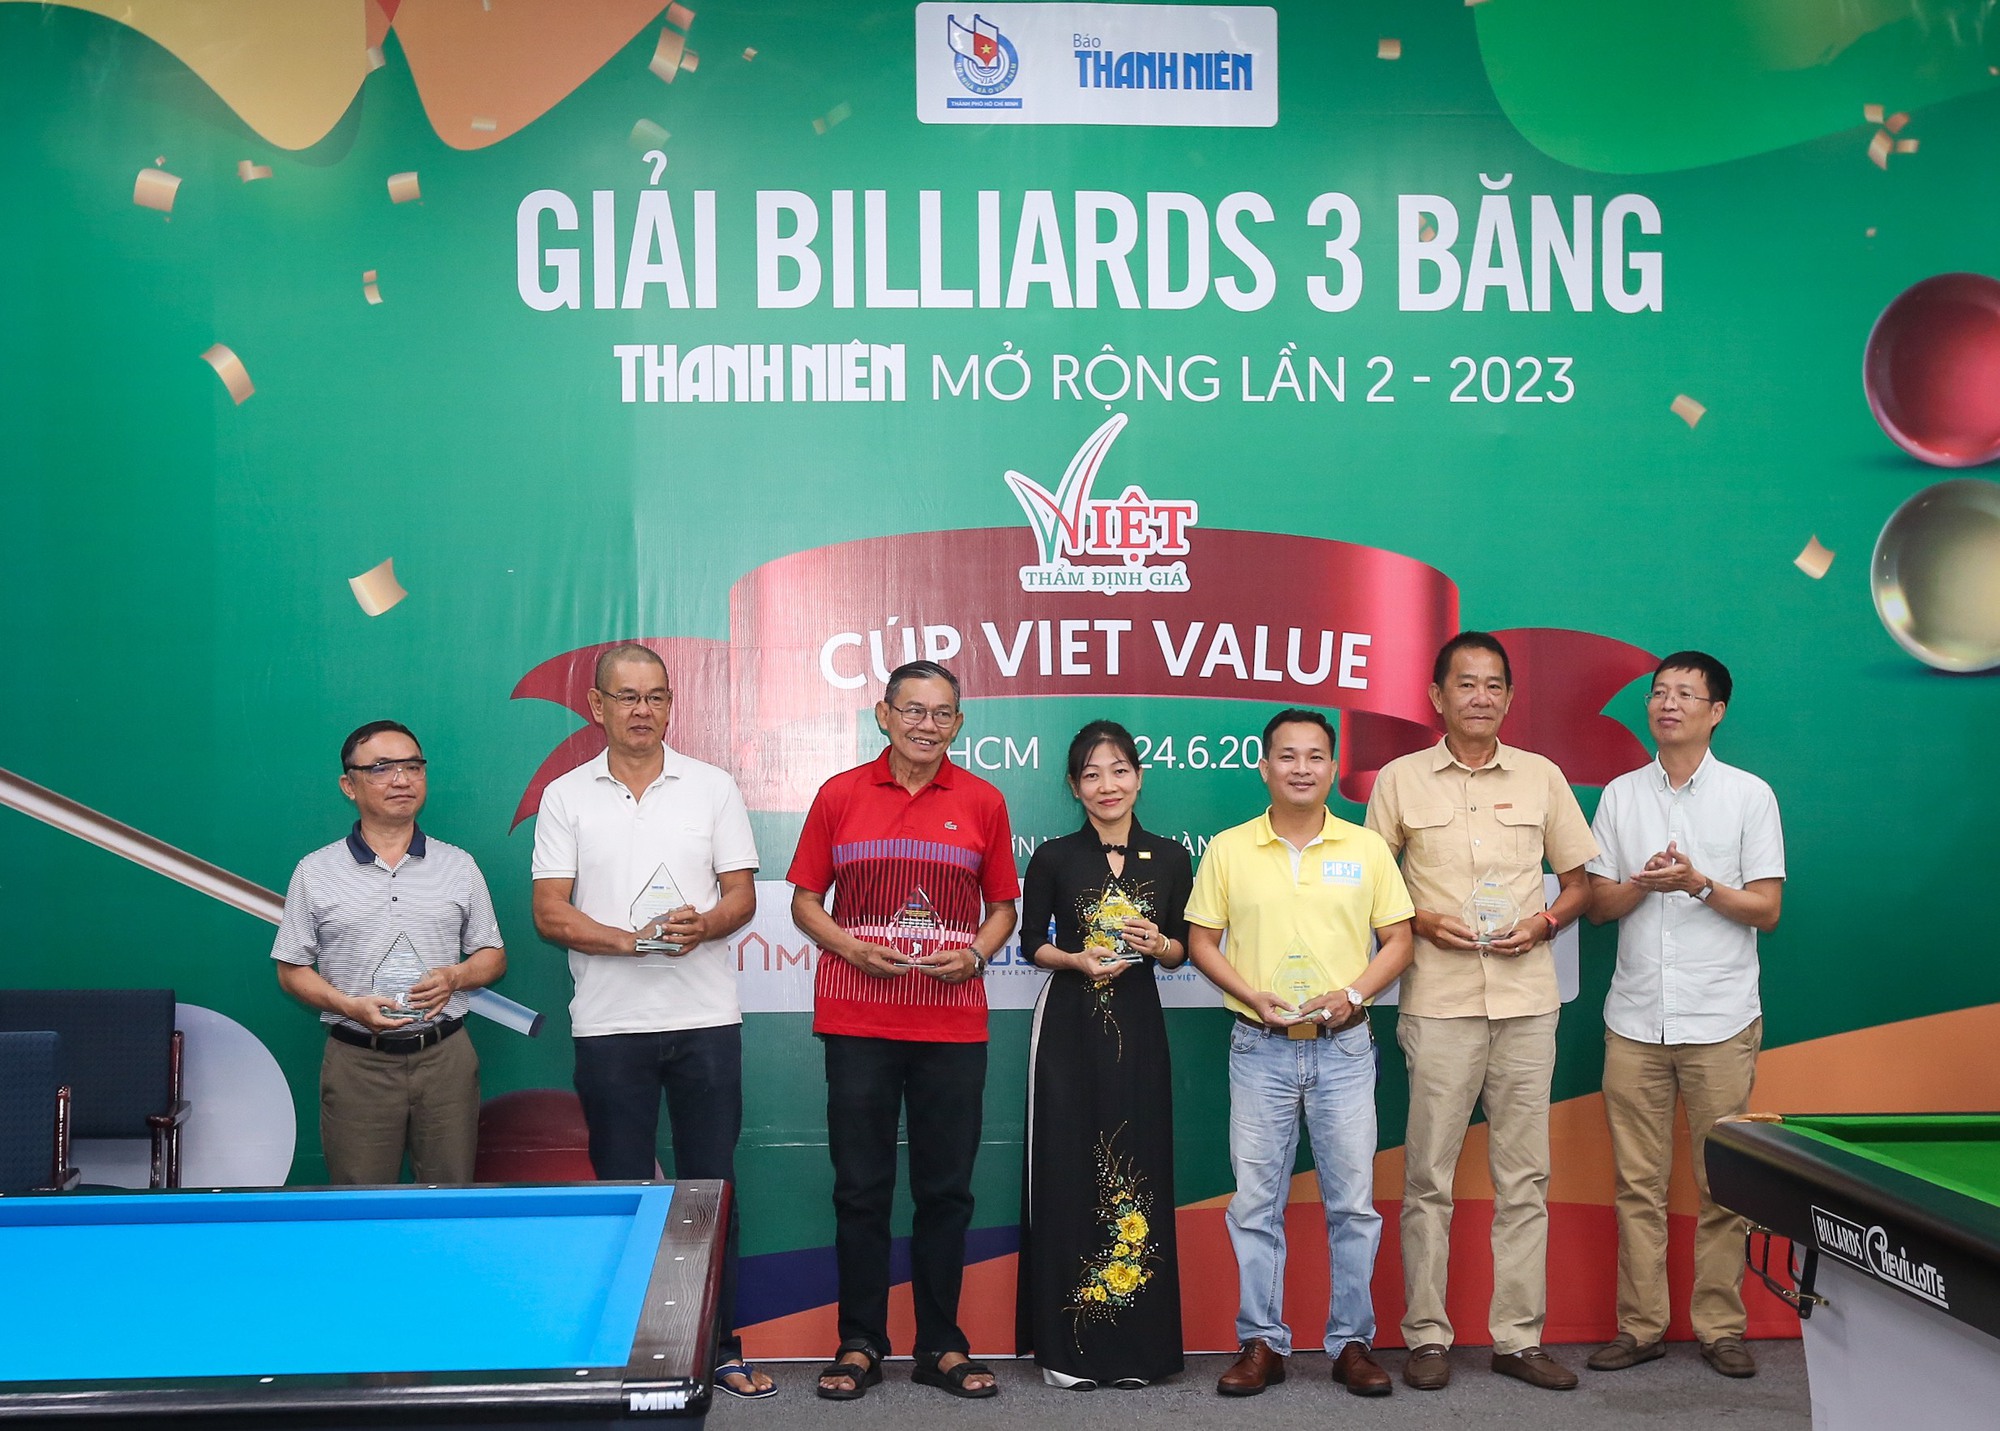 Nguyễn Hoàng Yến Nhi hứa hẹn bùng nổ tại giải billiards  3 băng Thanh Niên - Ảnh 4.